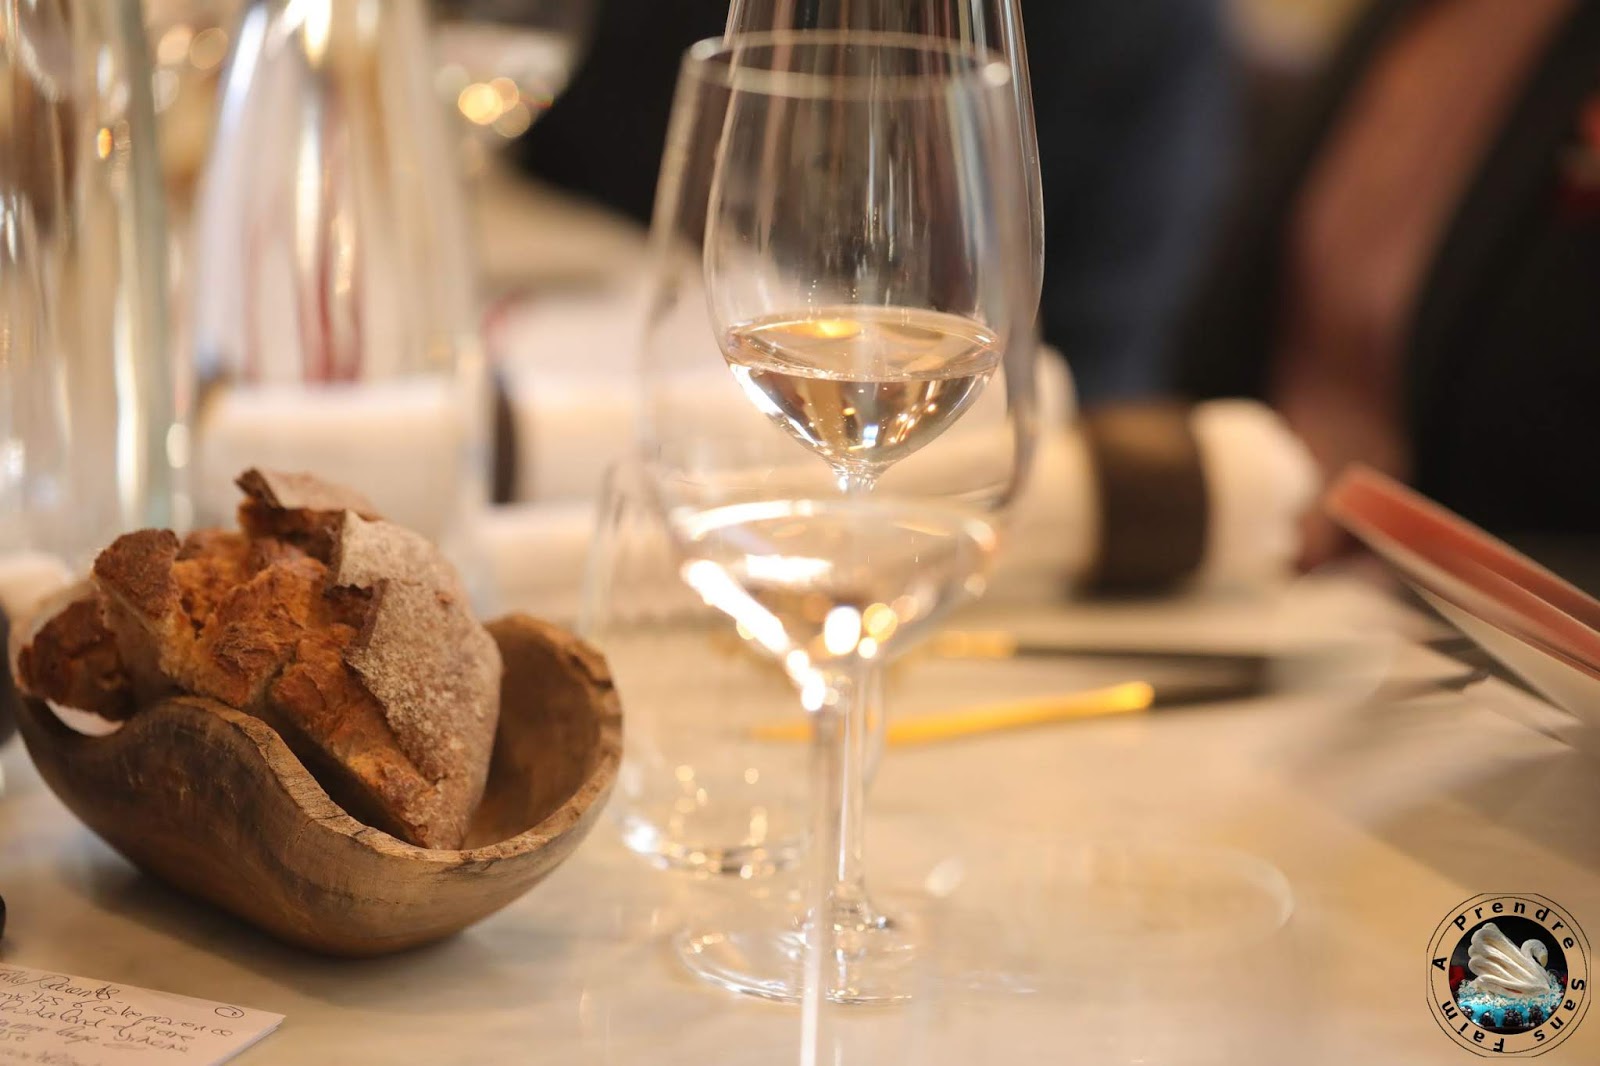  Découverte des vins Fabre en Provence au restaurant Substance